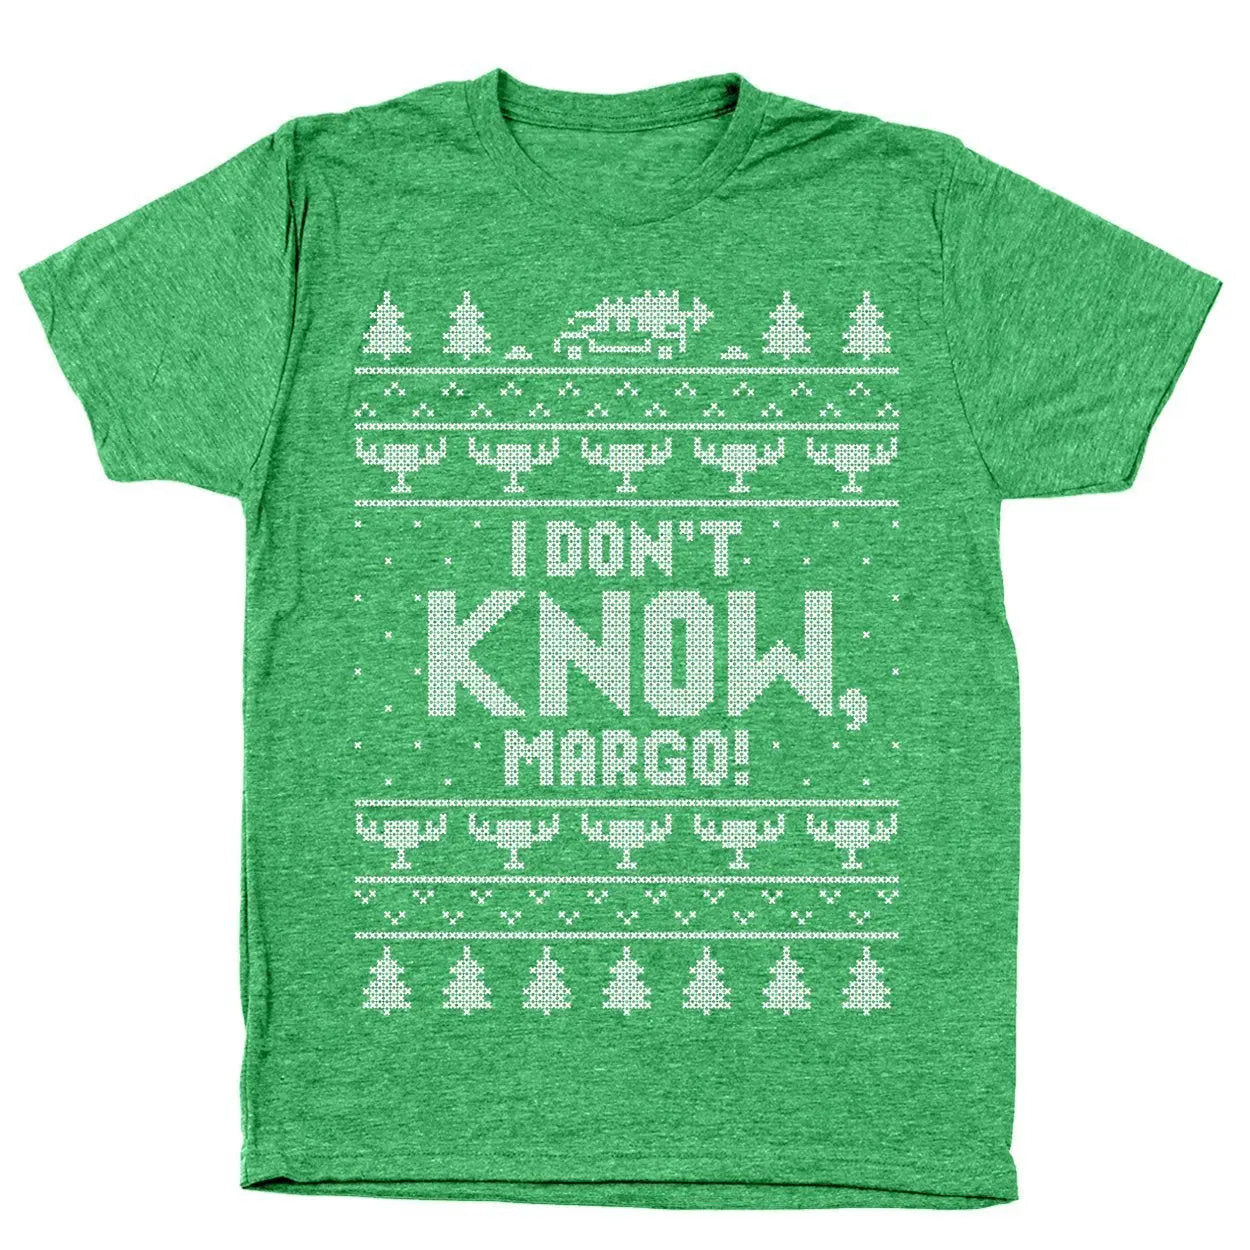 I Don't Know Margo Tshirt - Donkey Tees